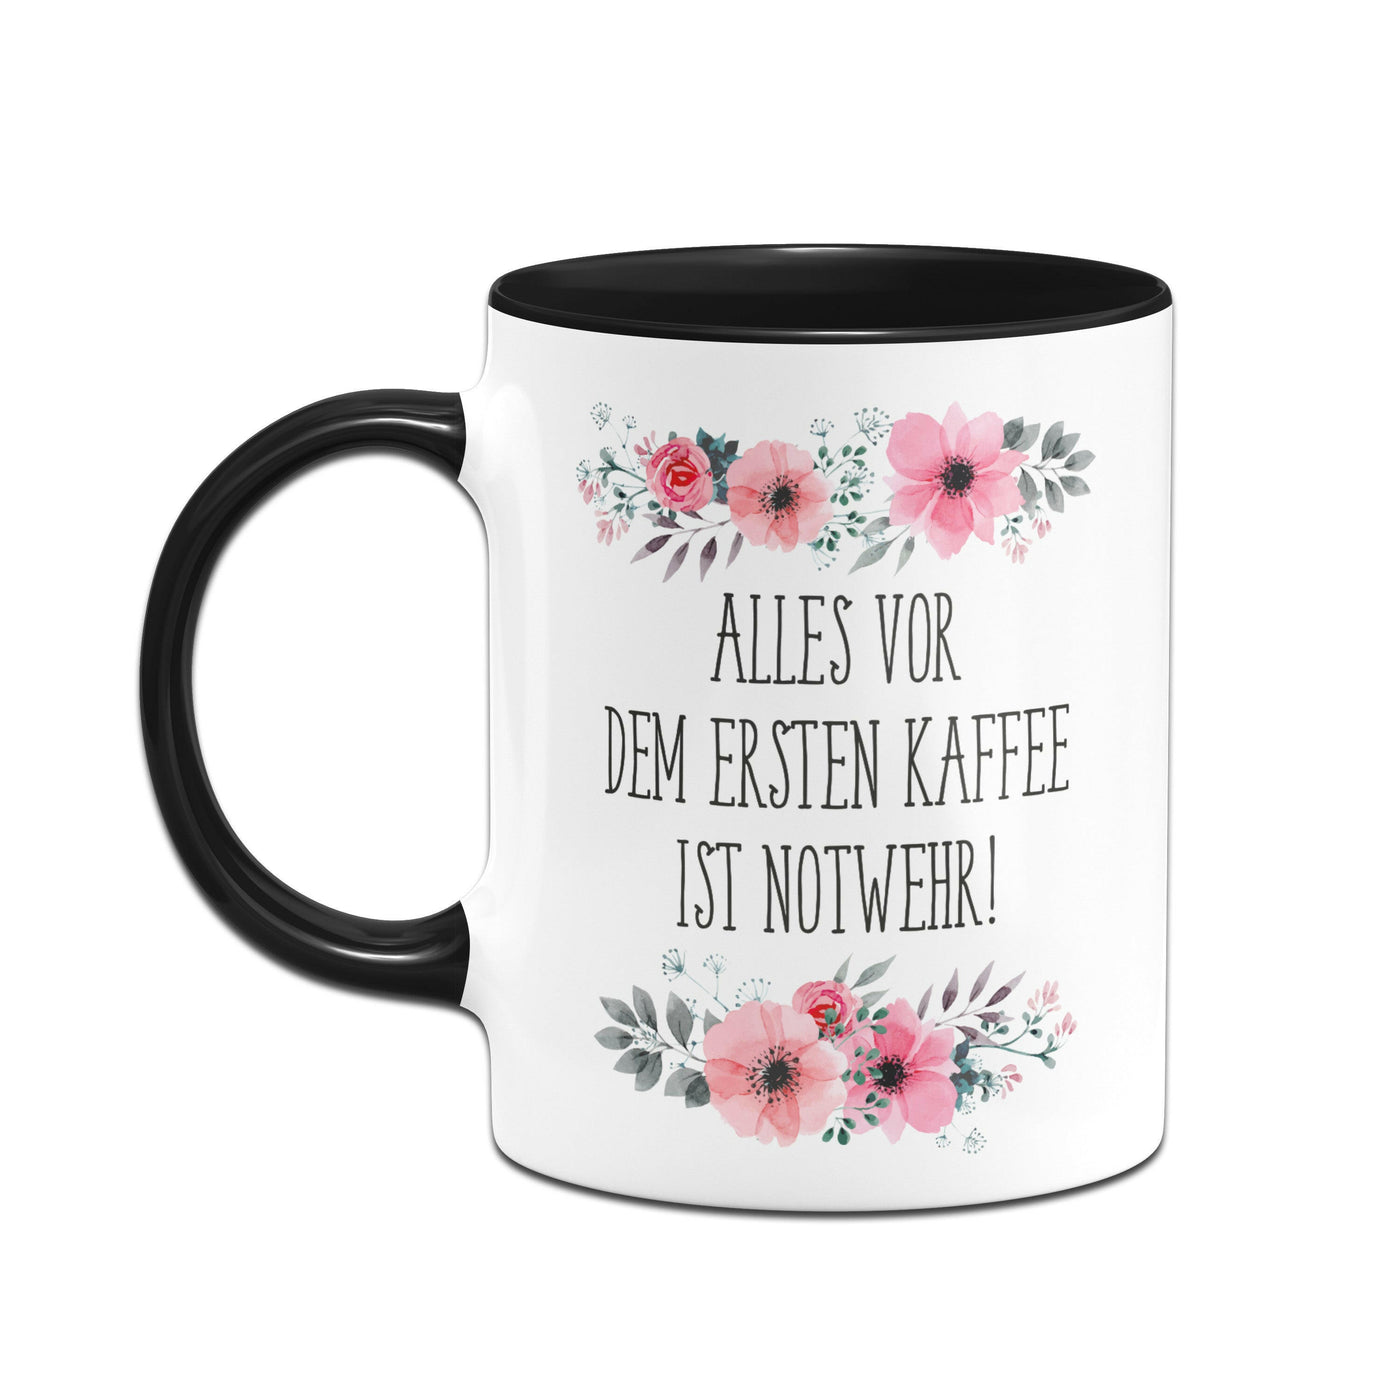 Bild: Tasse - Alles vor dem ersten Kaffee ist Notwehr! - blumig Geschenkidee